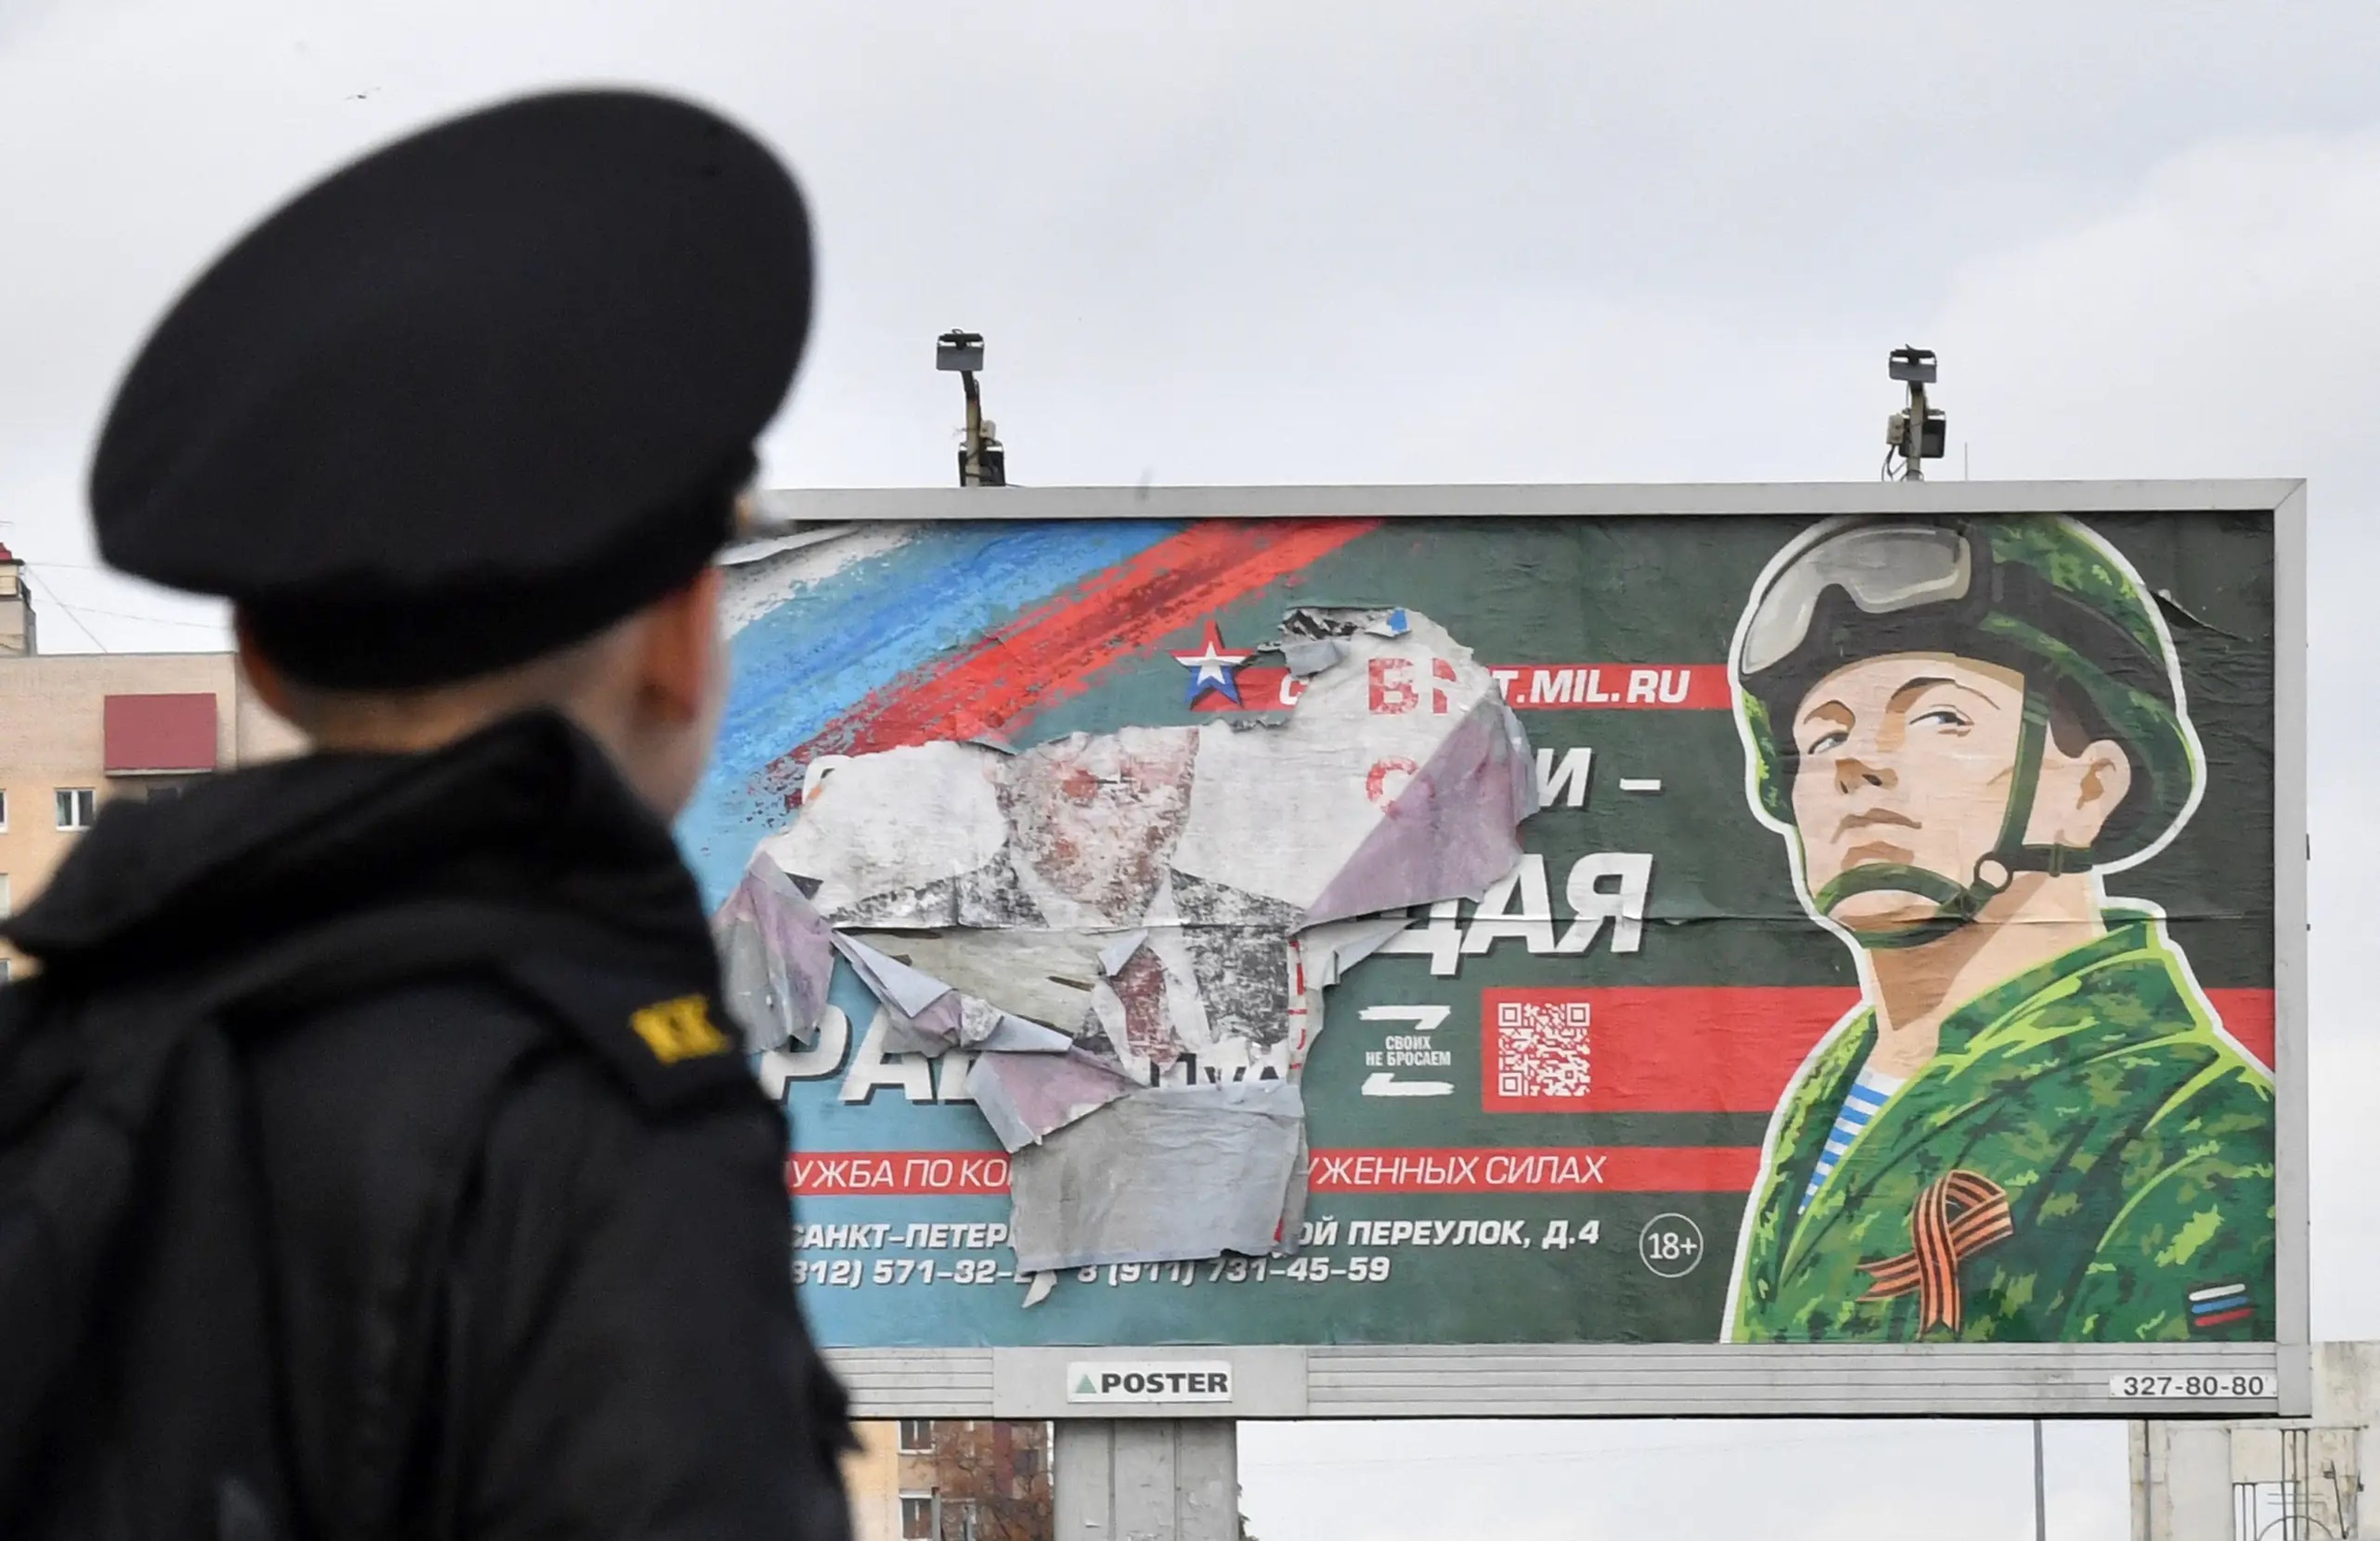 Un militar frente a una valla publicitaria que promociona el servicio militar en San Petersburgo.